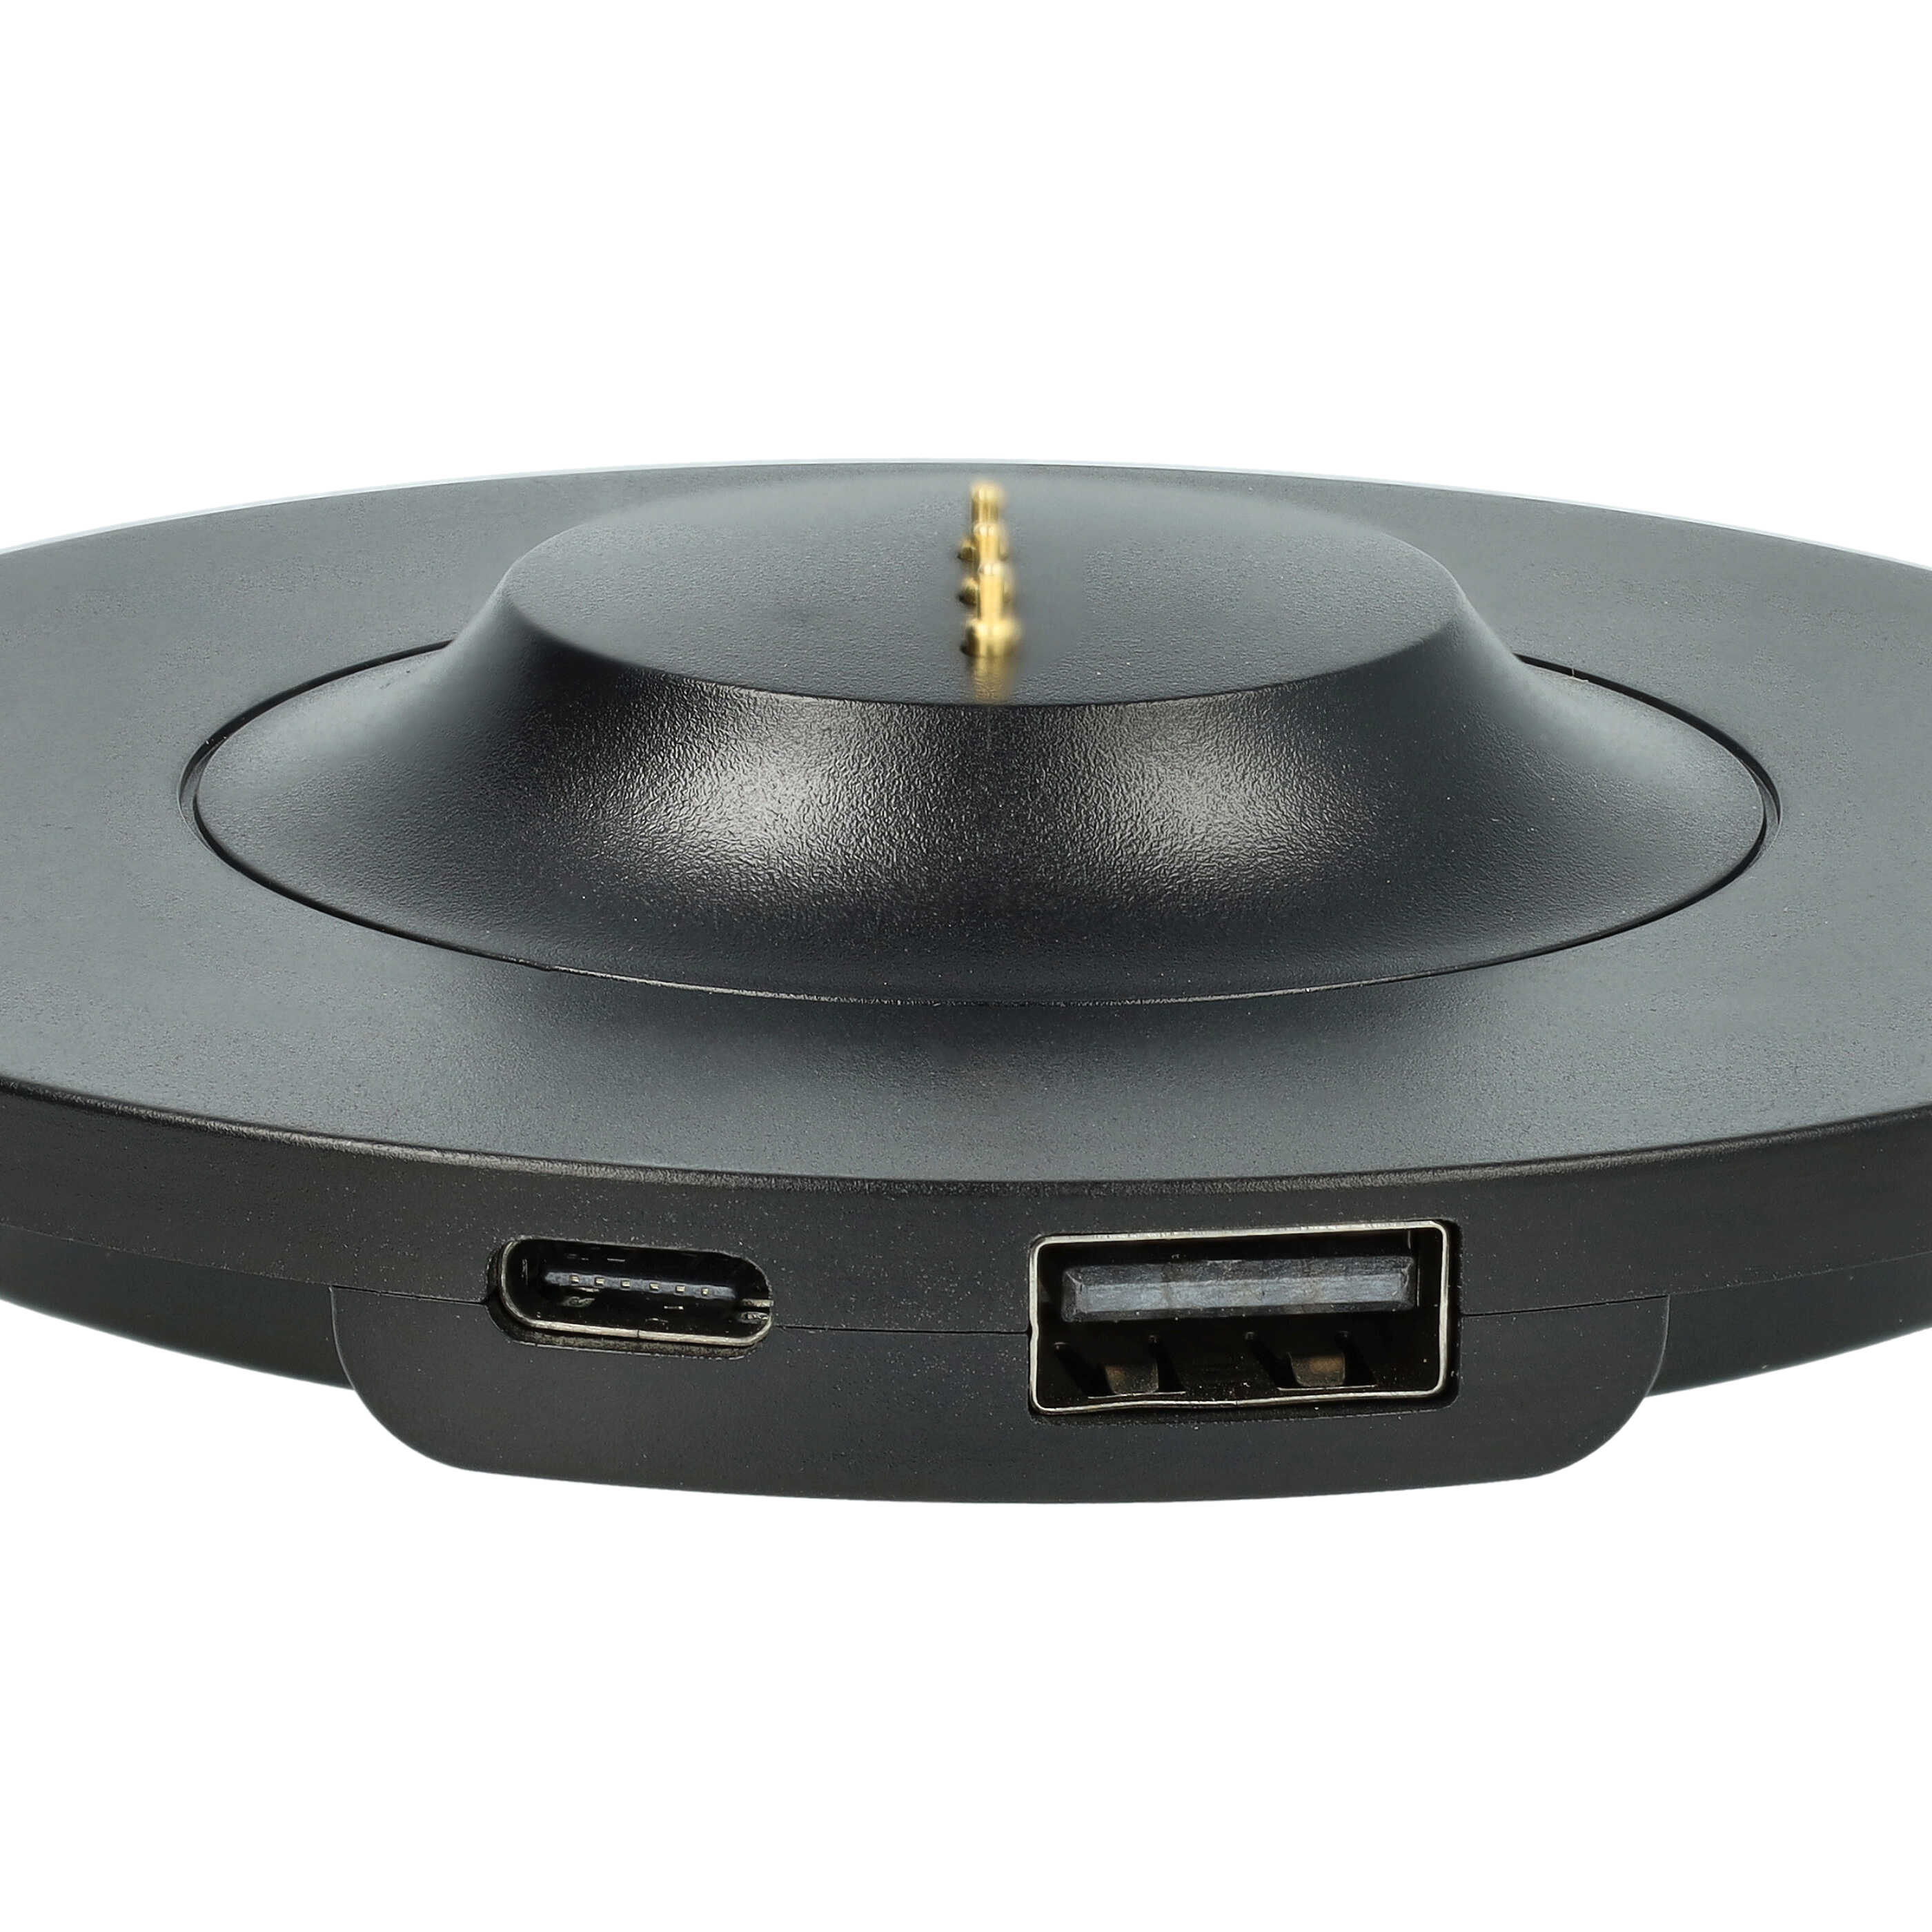 USB-Ladestation passend für Bose Portable Home Speaker Lautsprecher - Ladeschale + USB-C Ladekabel 155 cm